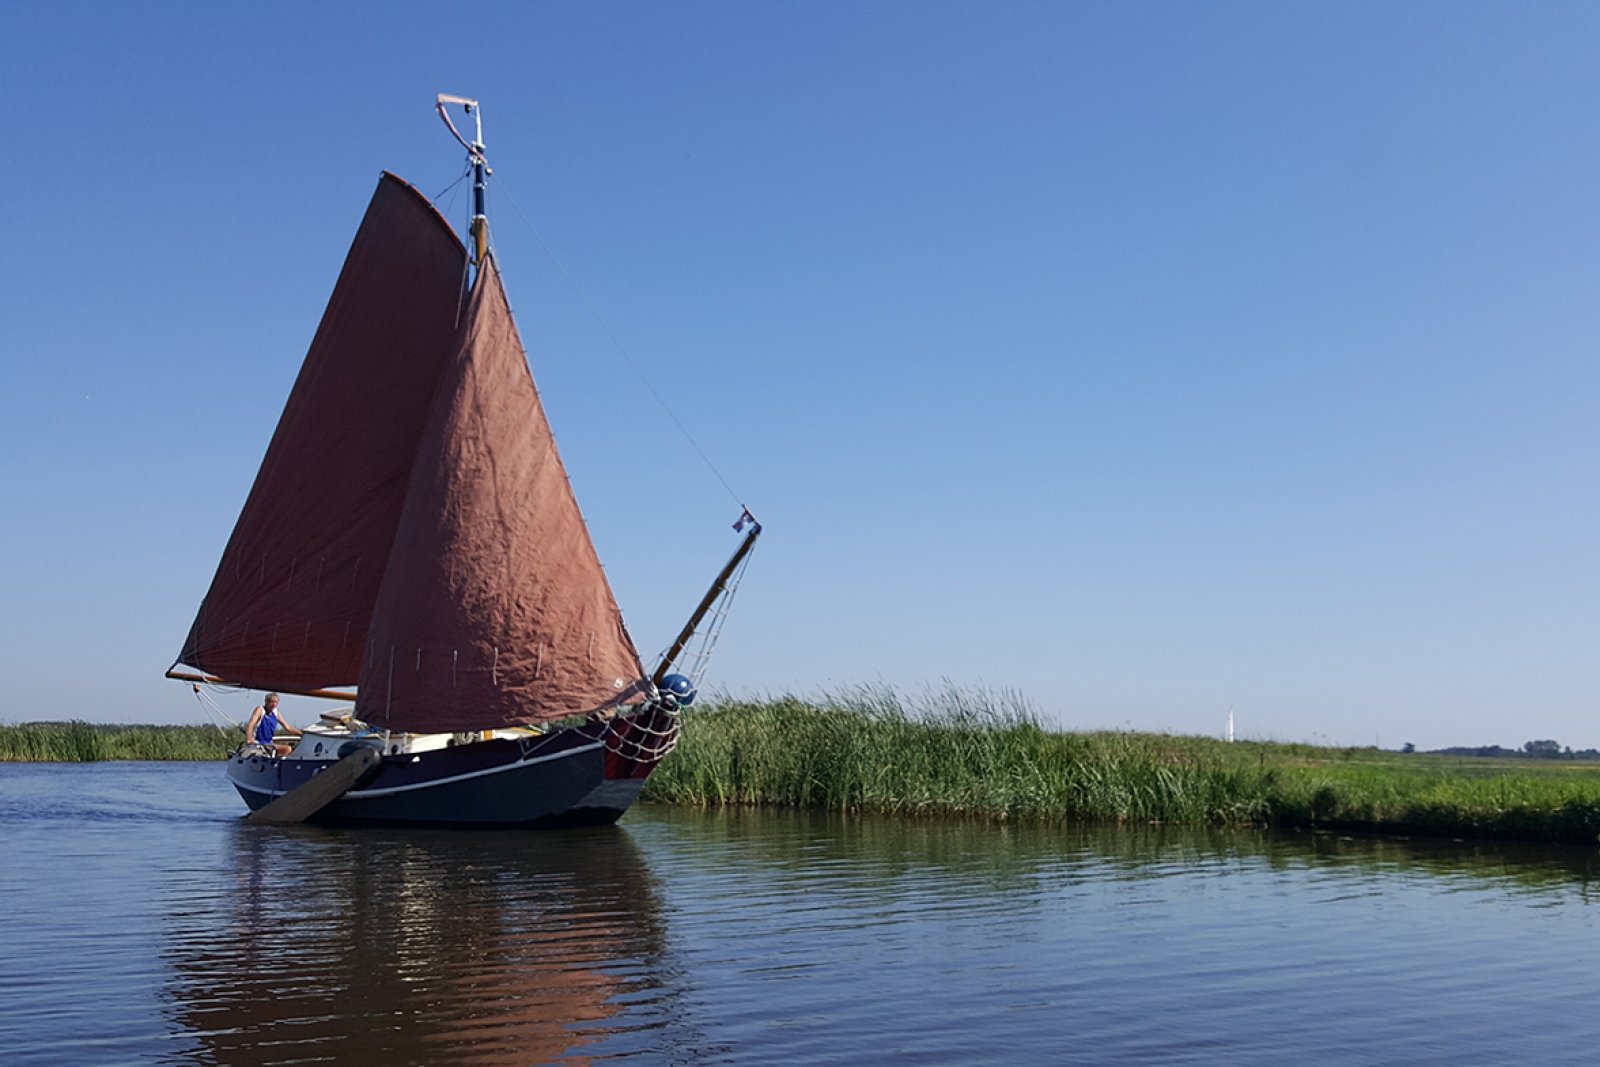 Skutsje sailing on the Alde Feanen